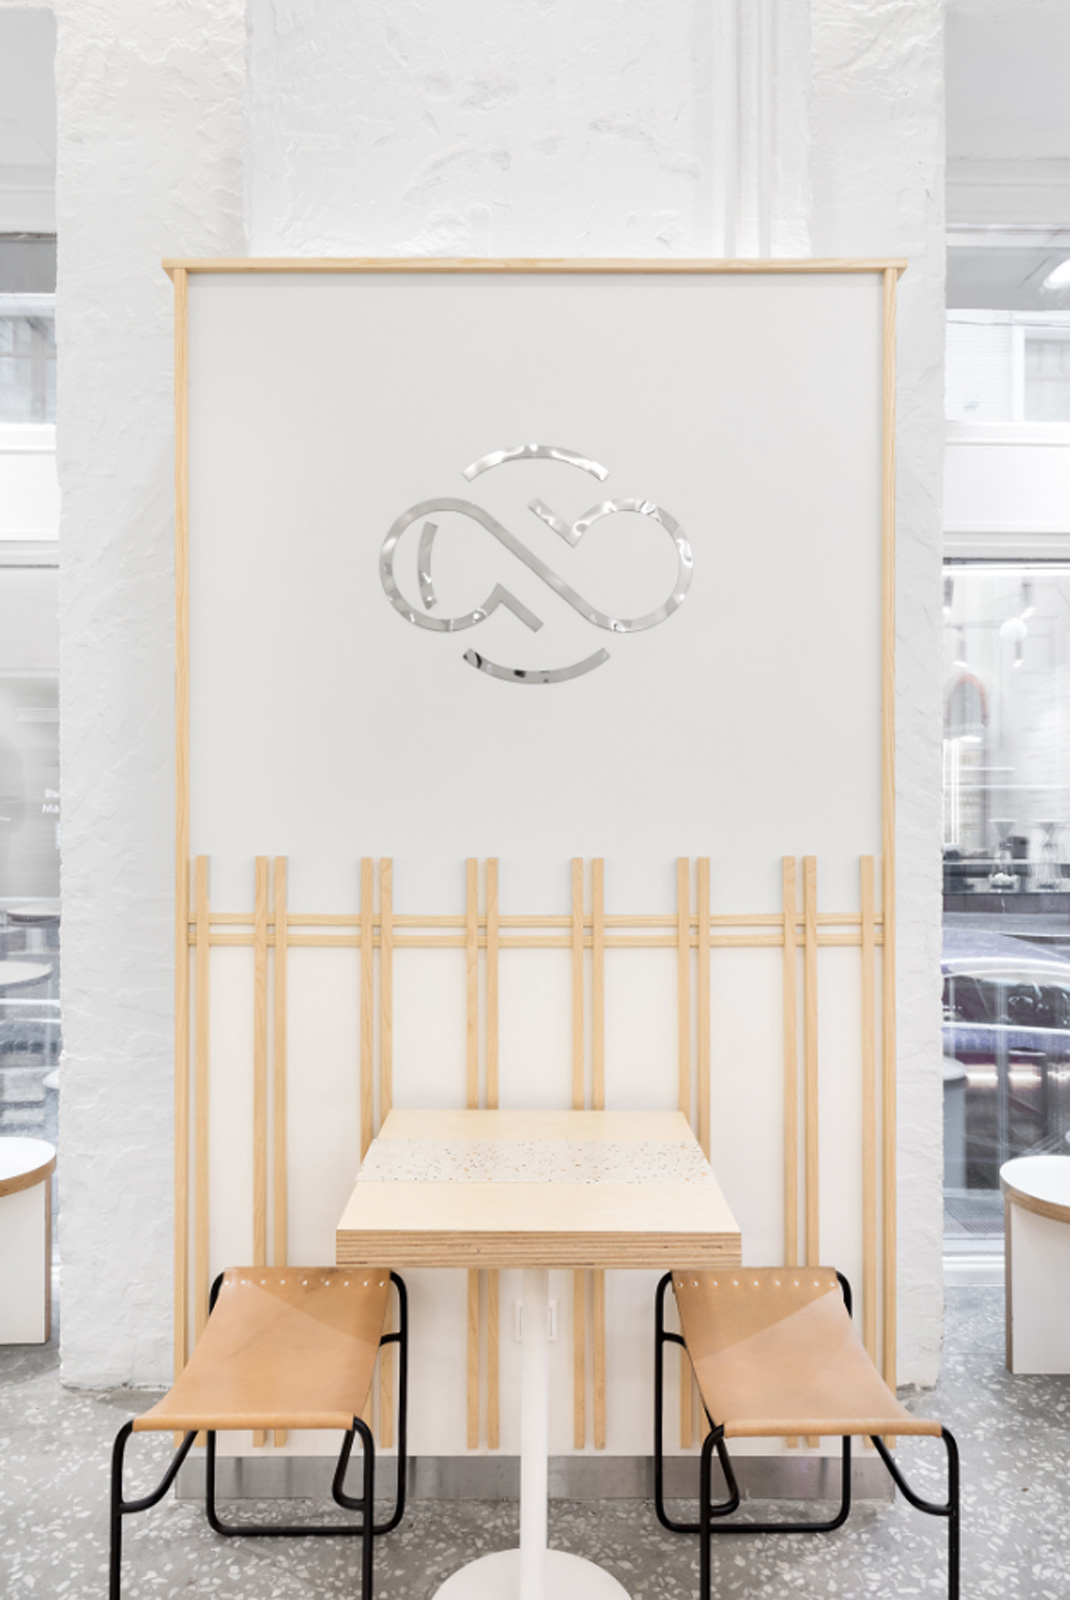 ABC咖啡烘焙机 俄罗斯 咖啡店 极简主义 日本设计 白色 logo设计 vi设计 空间设计